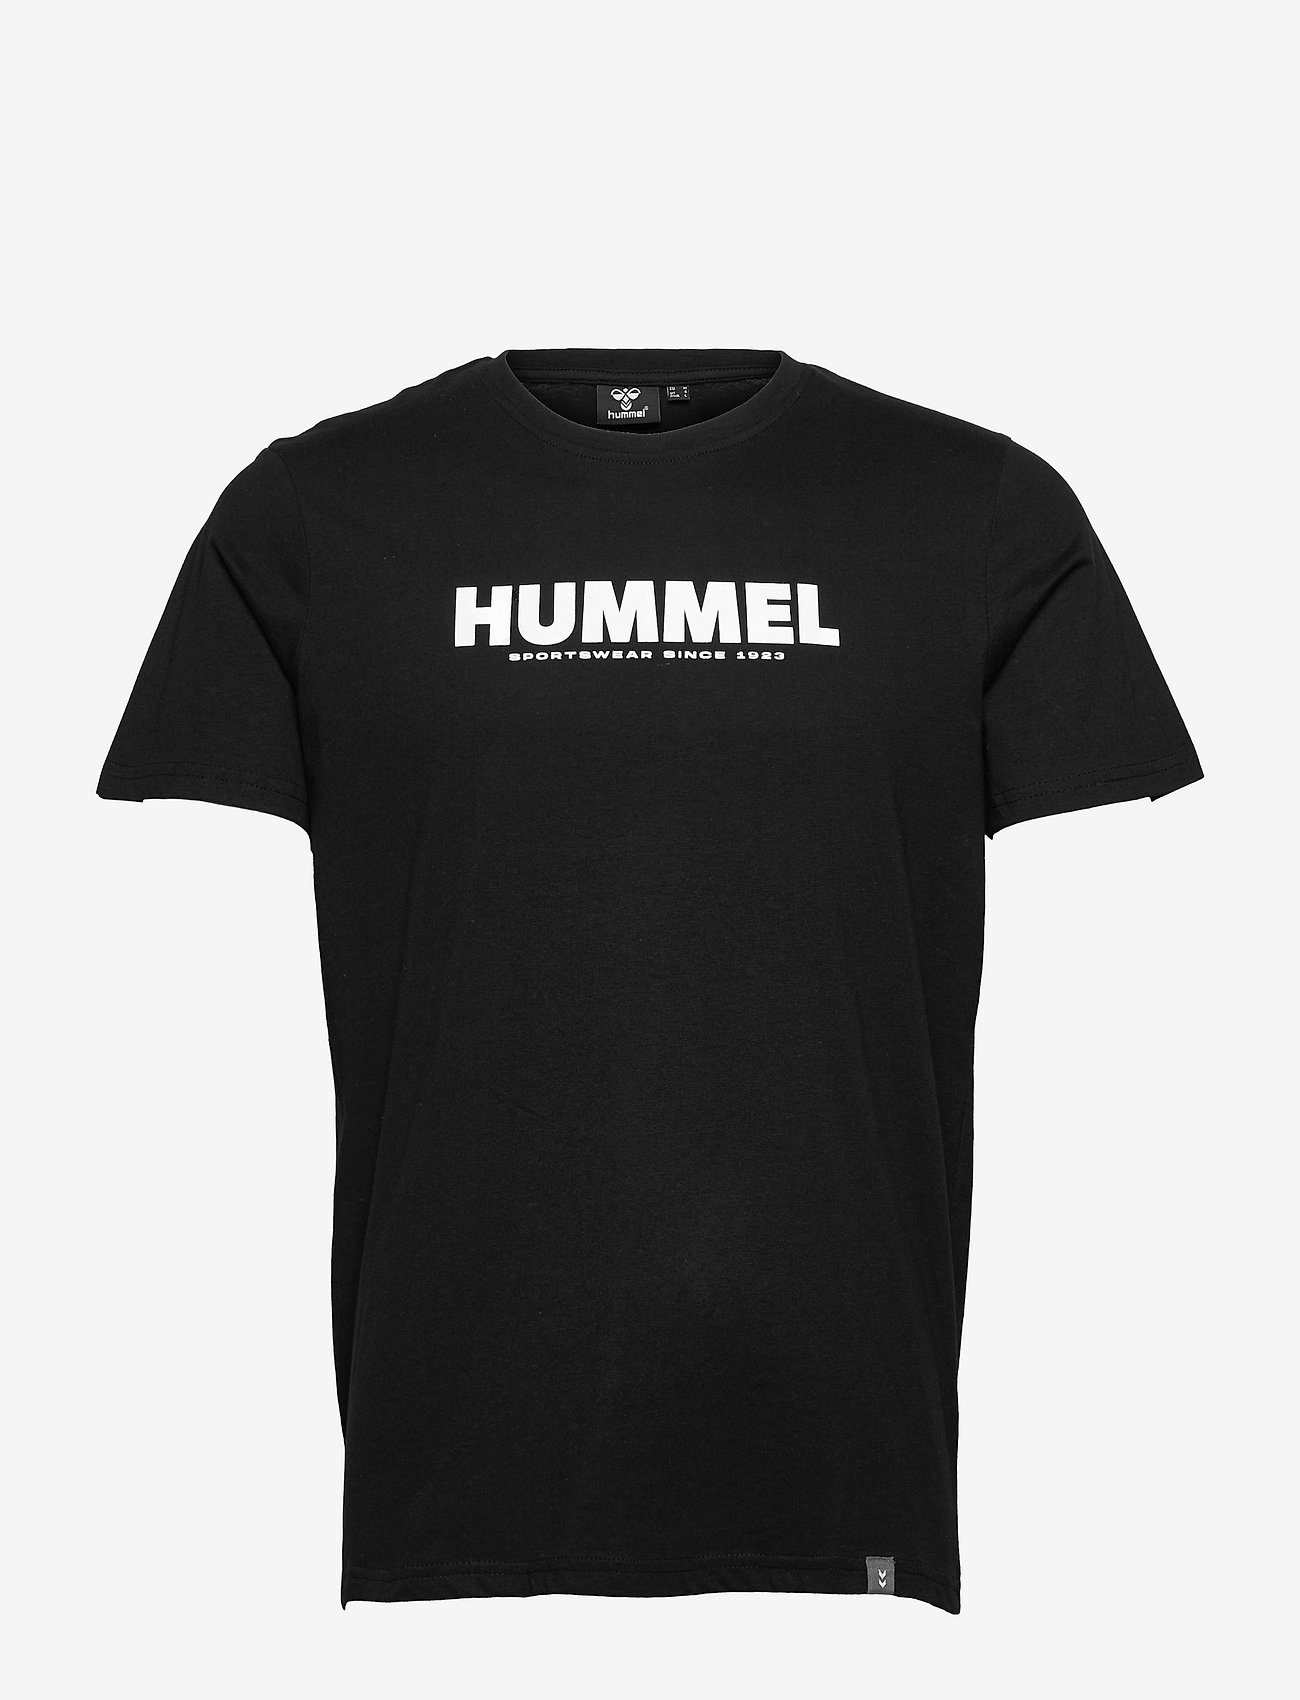 Hummel - hmlLEGACY T-SHIRT - laveste priser - black - 0